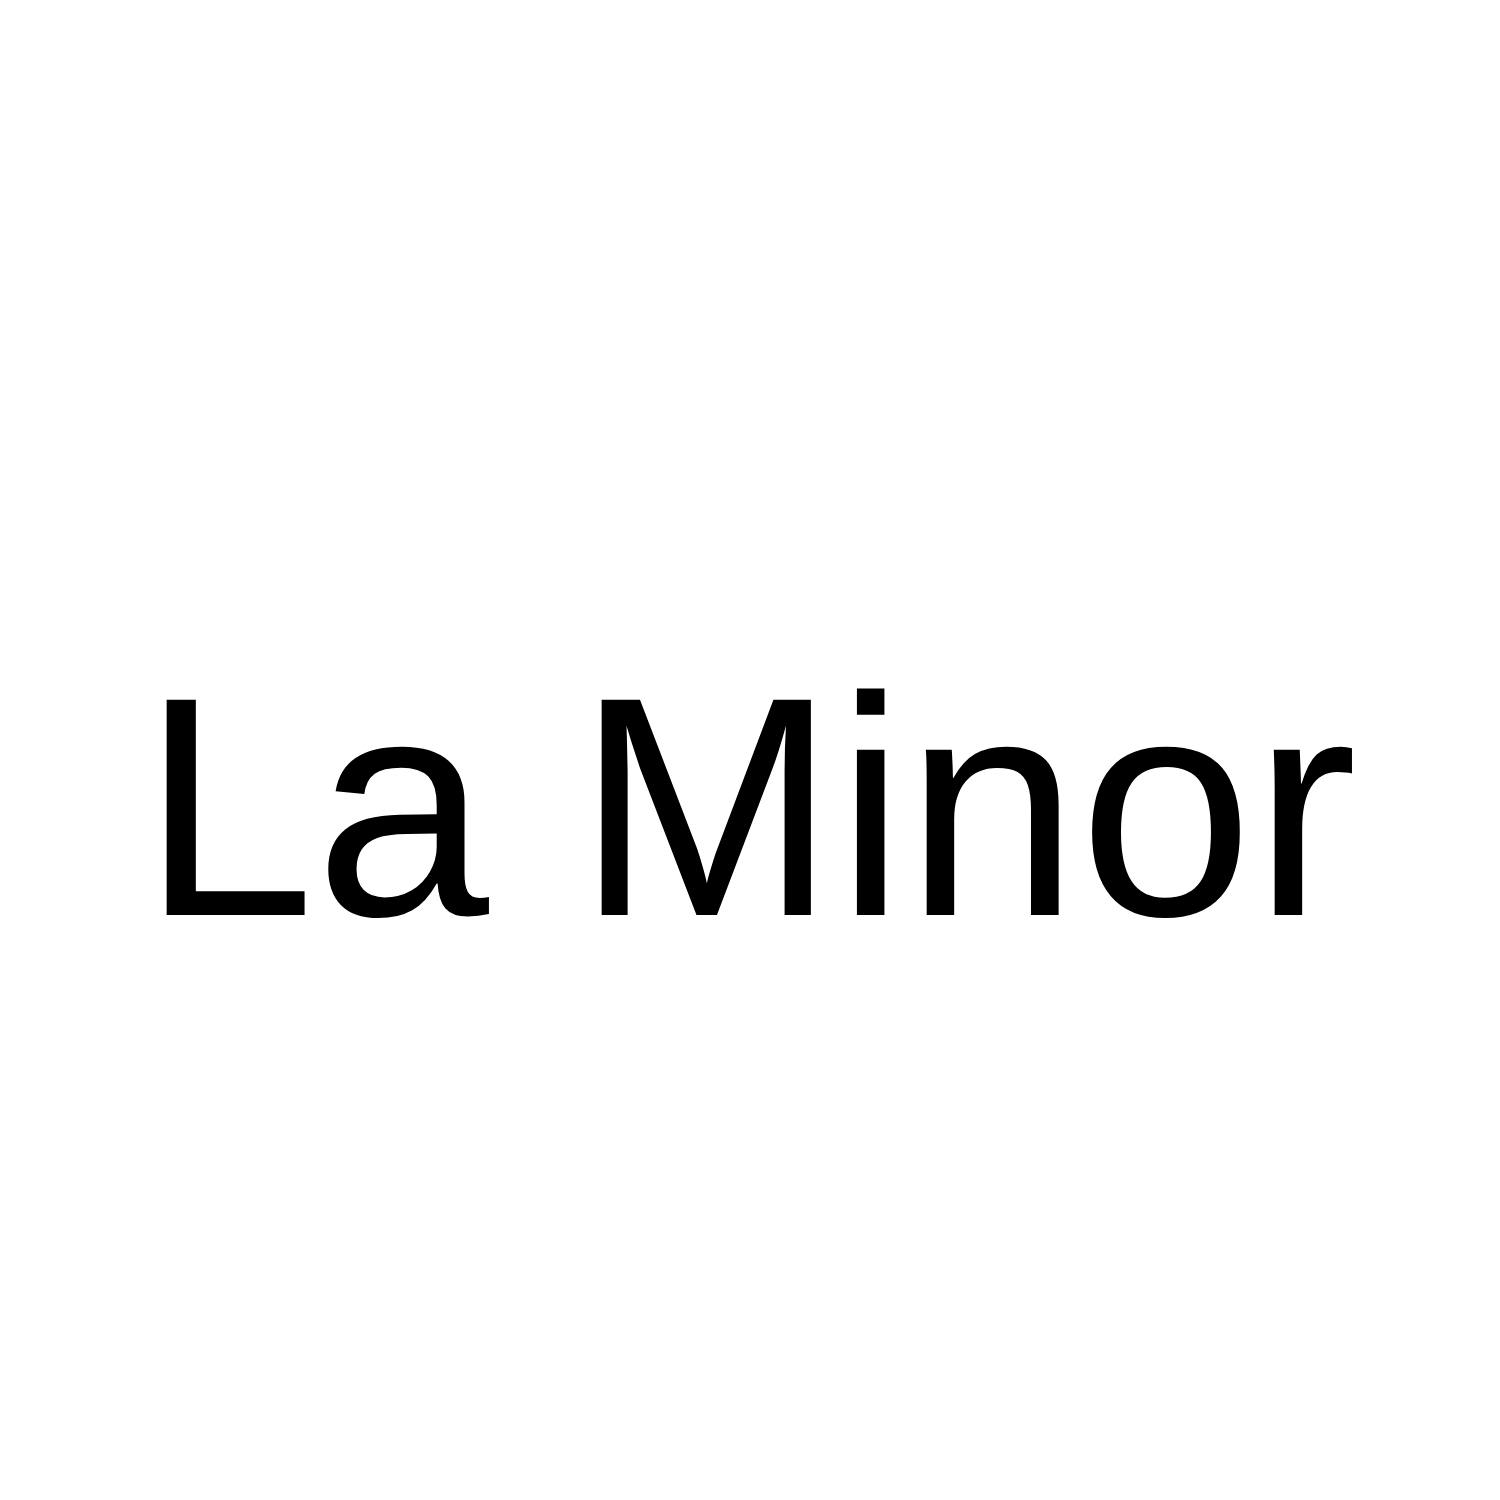 La Minor